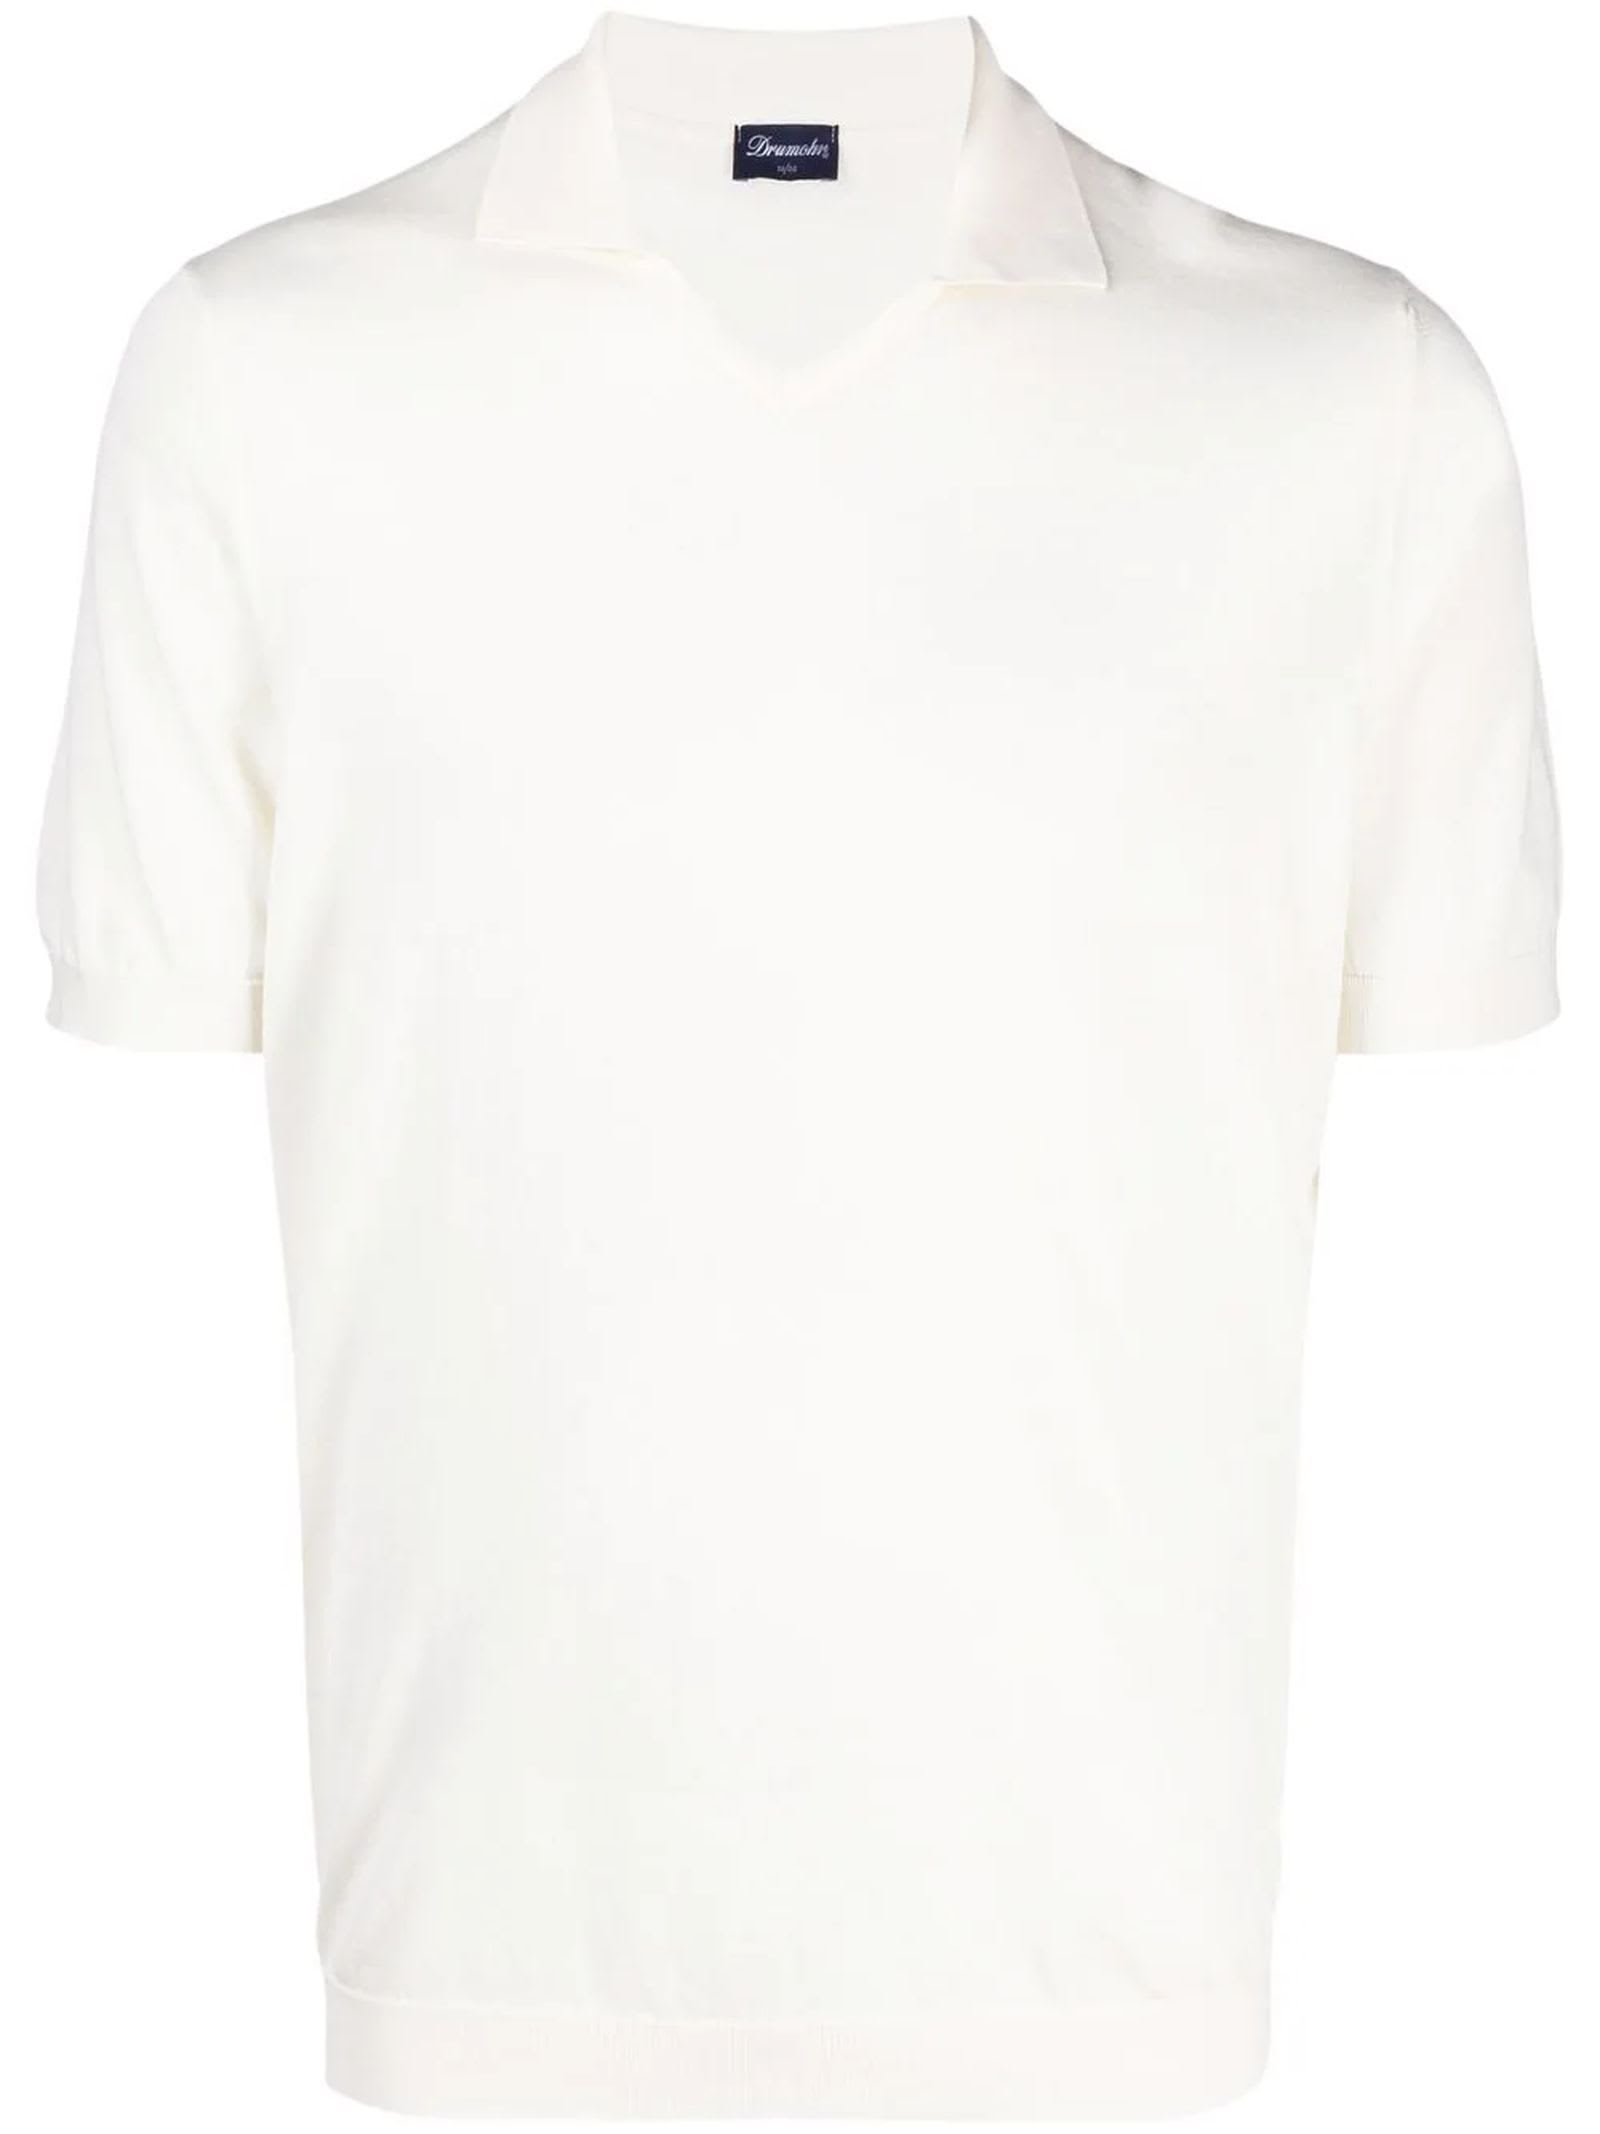 Drumohr White Cotton T-shirt